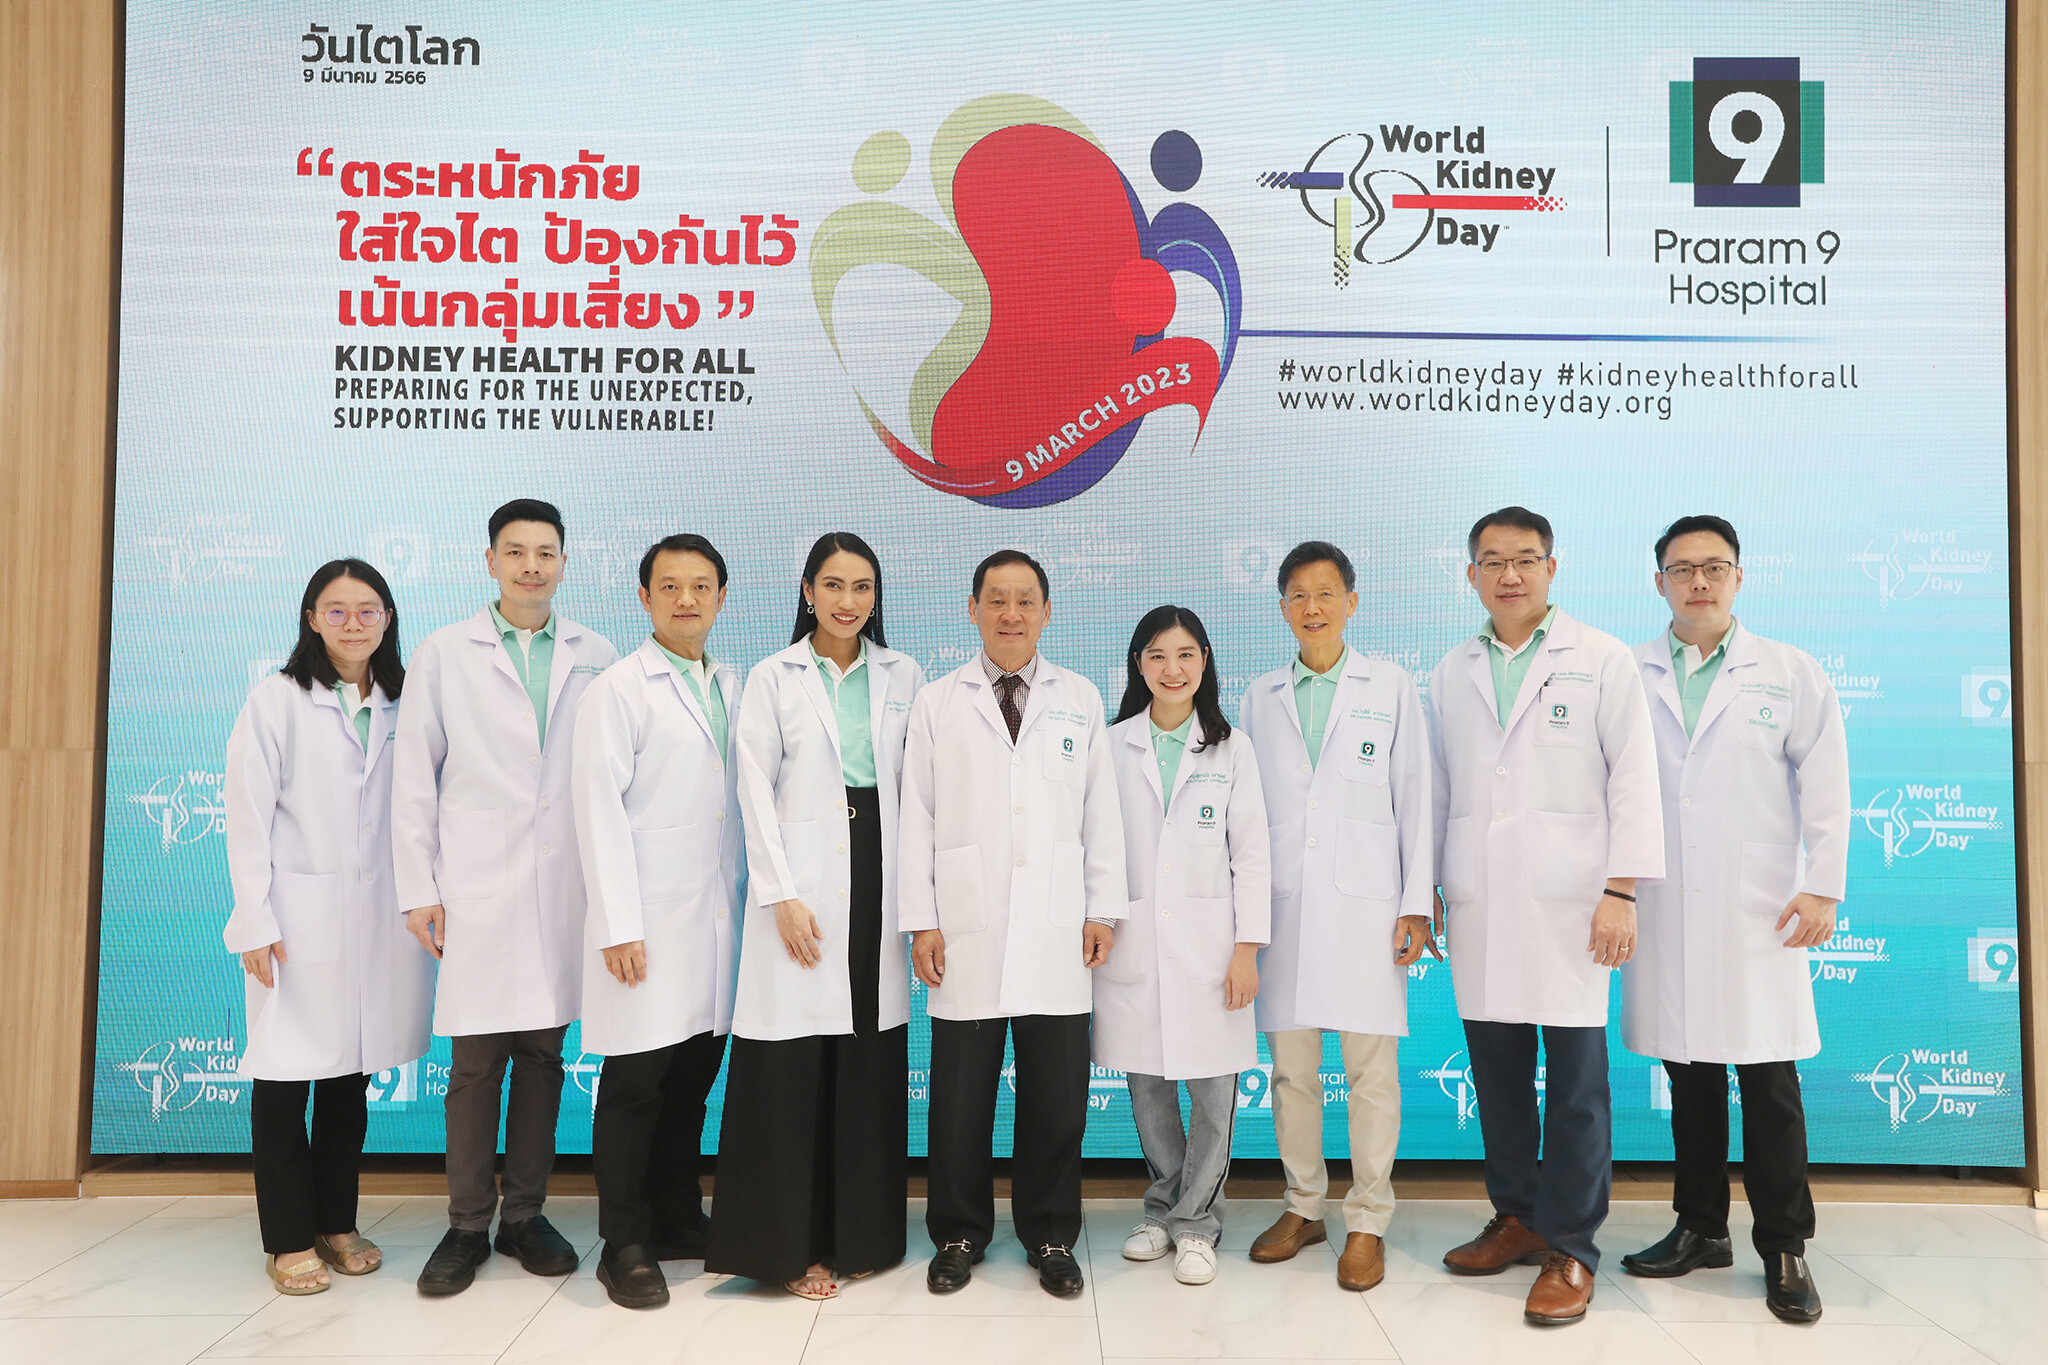 โรงพยาบาลพระรามเก้า ยกทีมแพทย์ จัดงาน "วันไตโลก(World Kidney Day 2023)" ตระหนักภัย ใส่ใจไต ป้องกันไว้ เน้นกลุ่มเสี่ยง